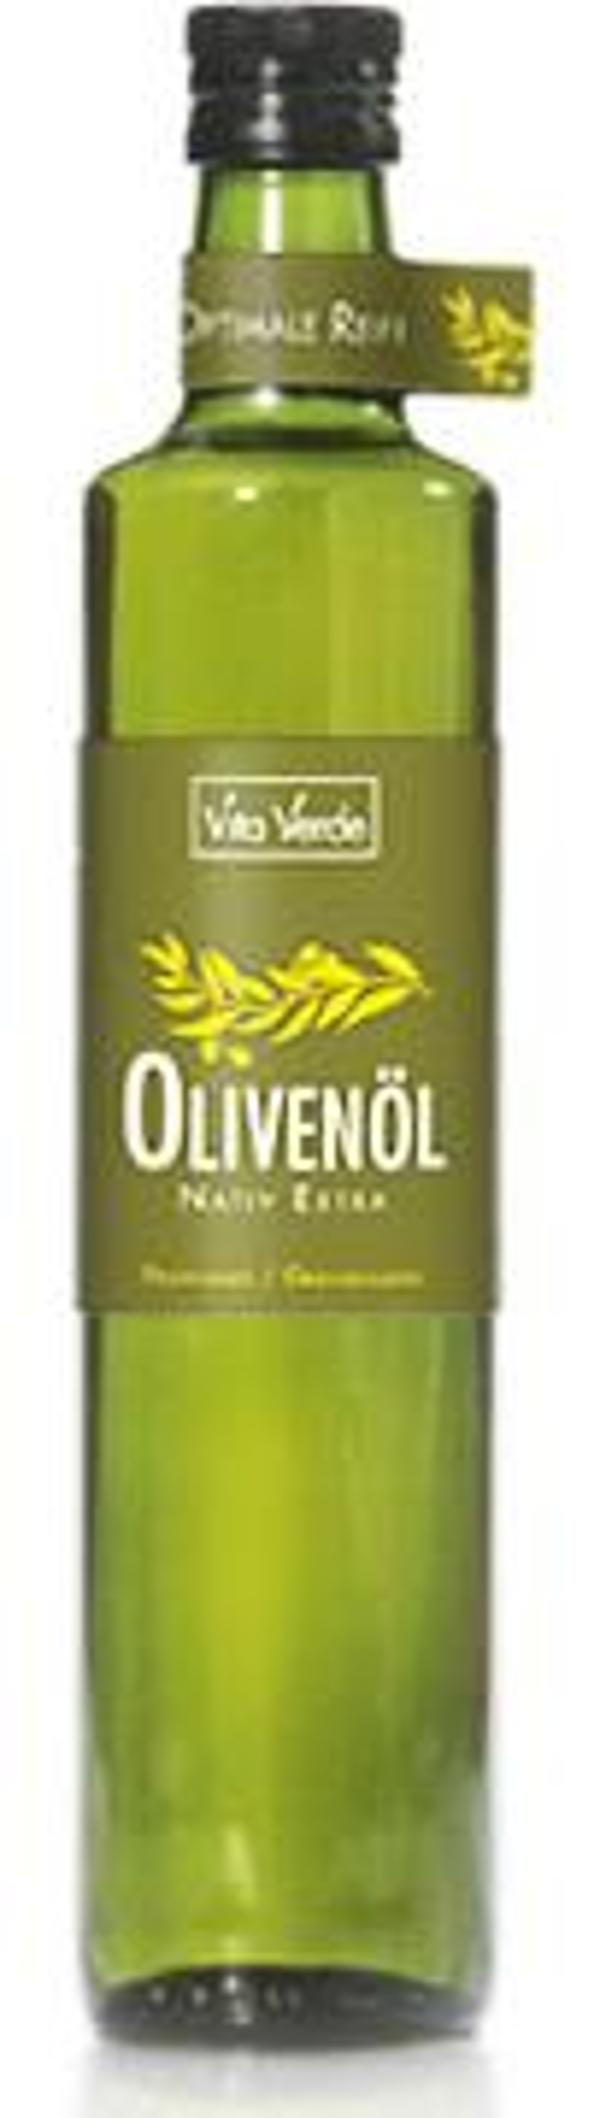 Produktfoto zu Olivenöl Vita Verde Pel 500ml